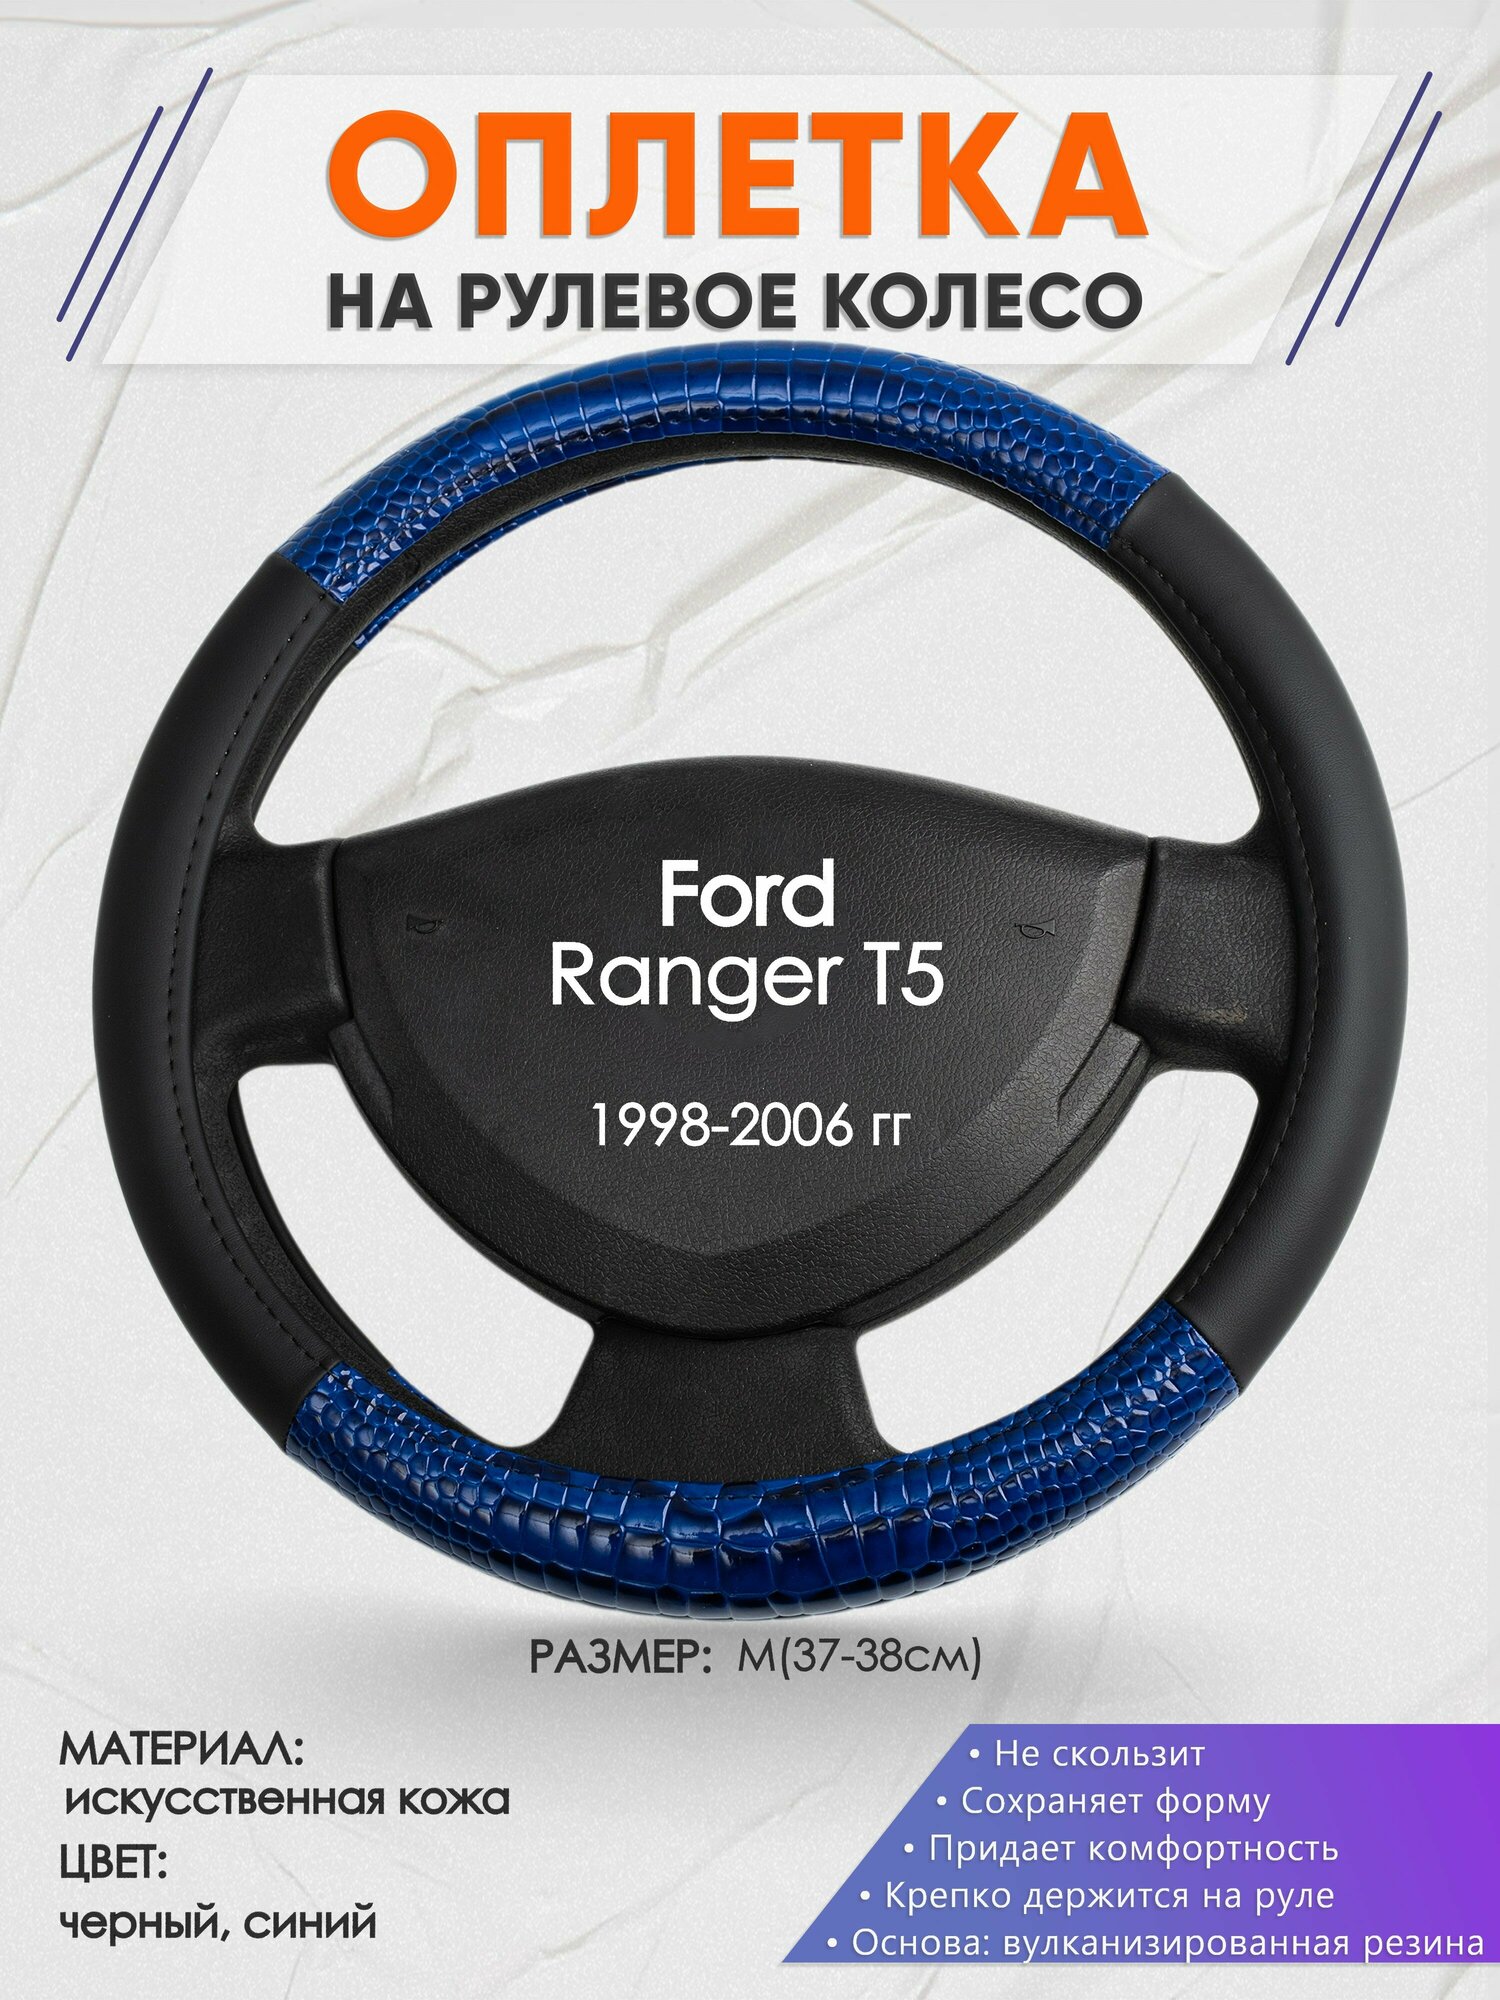 Оплетка на руль для Ford Ranger Т5(Форд Рейнджер Т5) 1998-2006, M(37-38см), Искусственная кожа 82